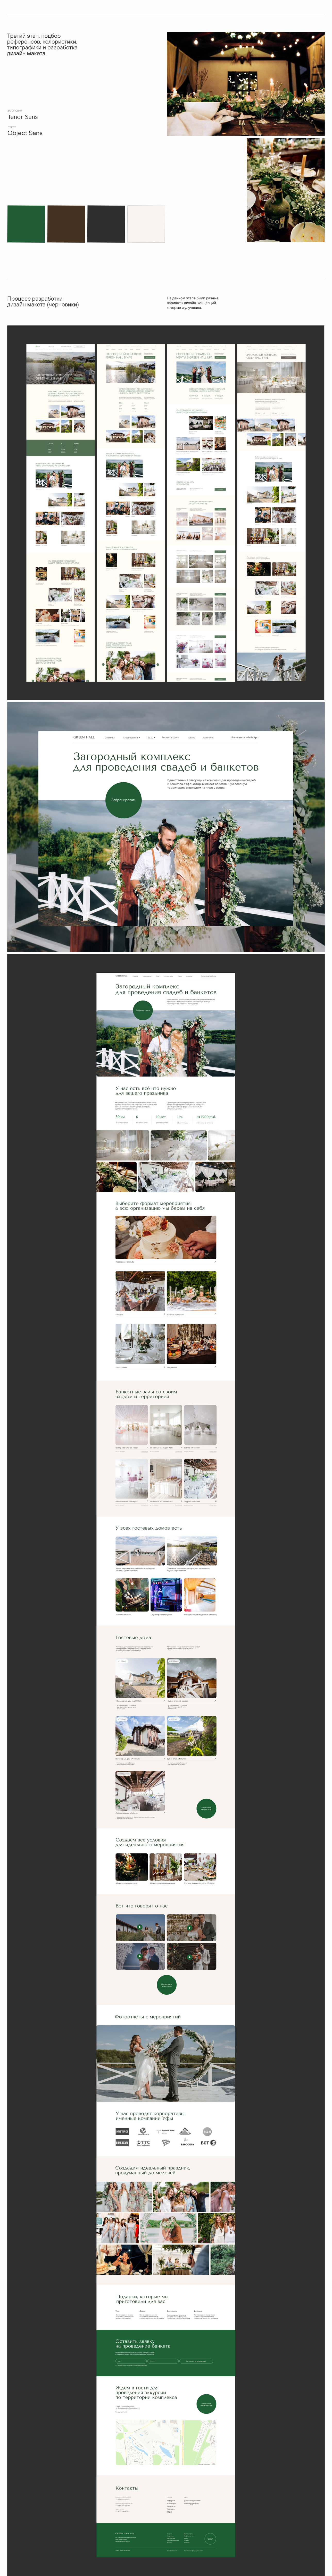 Загородный комплекс (банкеты, свадьбы, праздники) — Изображение №2 — Интерфейсы, Маркетинг на Dprofile